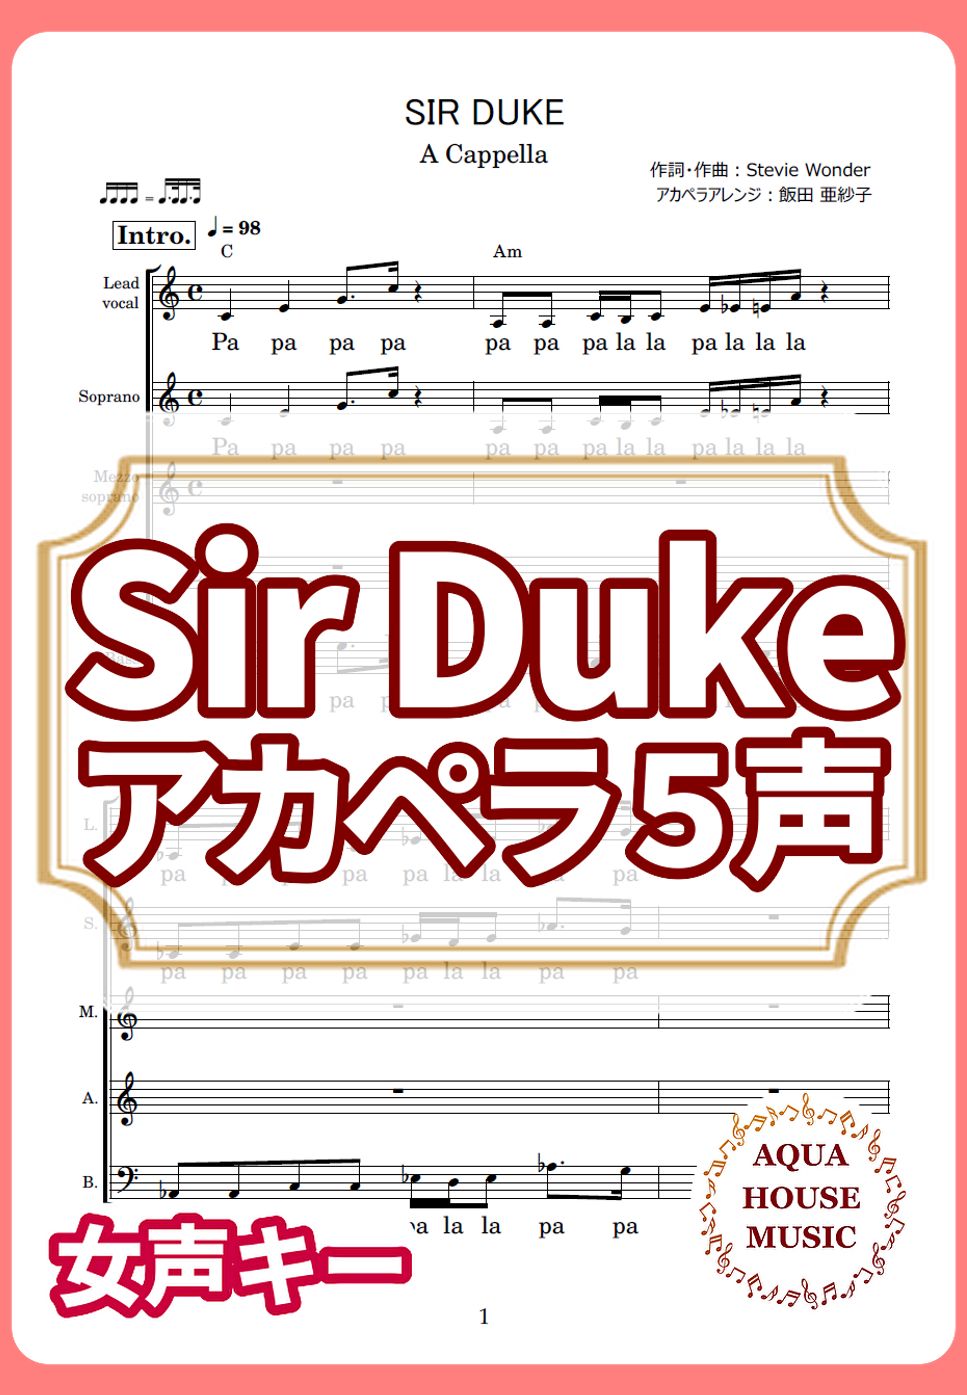 Stevie Wonder - SIR DUKE (アカペラ楽譜♪5声ボイパなし) by 飯田 亜紗子